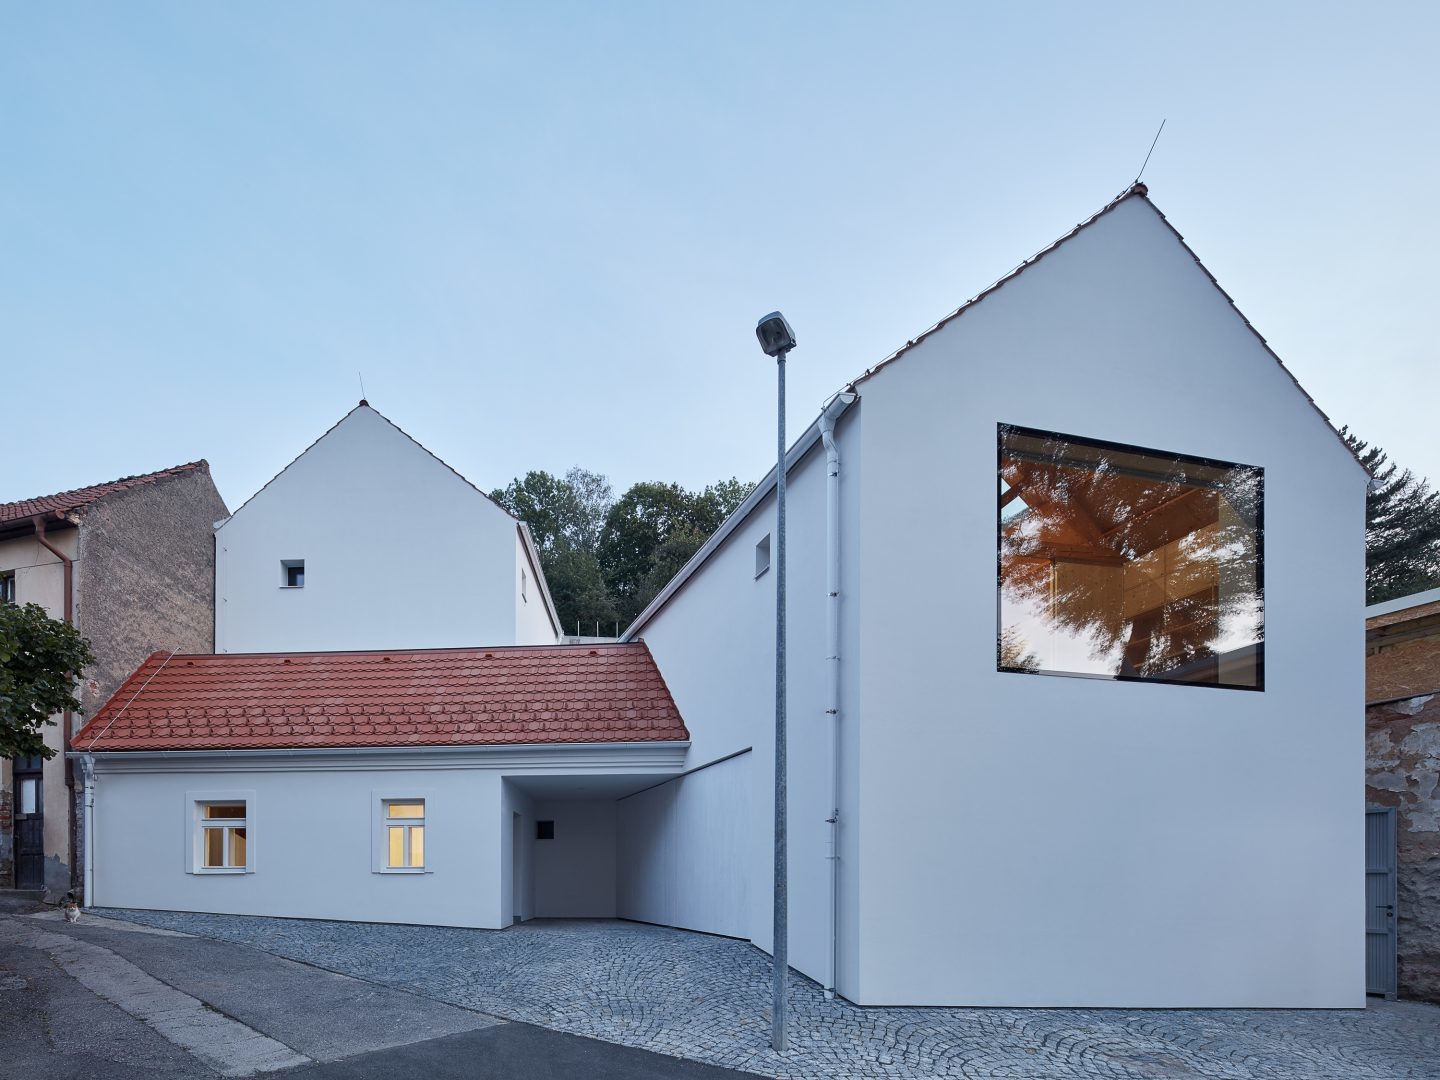 Rodinný dom Jinonice / Atelier 111 architekti